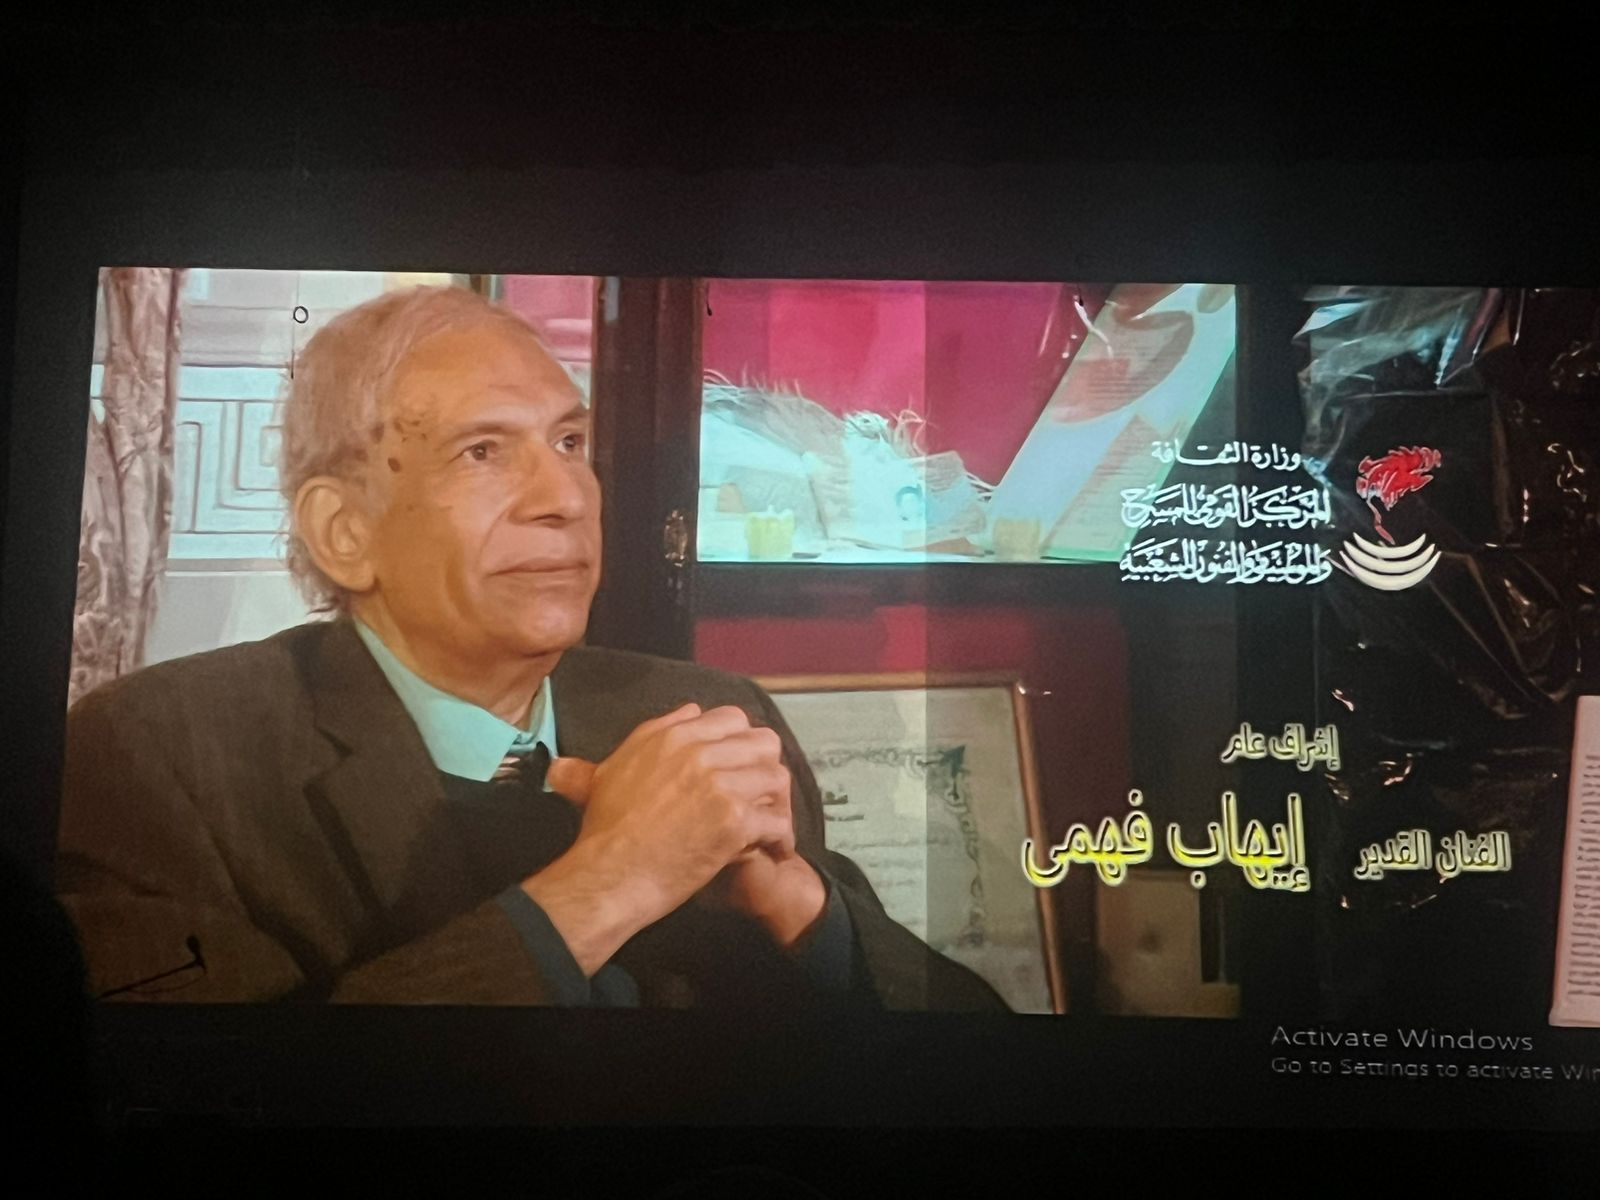 شهادات الفنانين عن رجل المسرح عمرو دوارة بحفل تكريمه بالمسرح القومي (3)